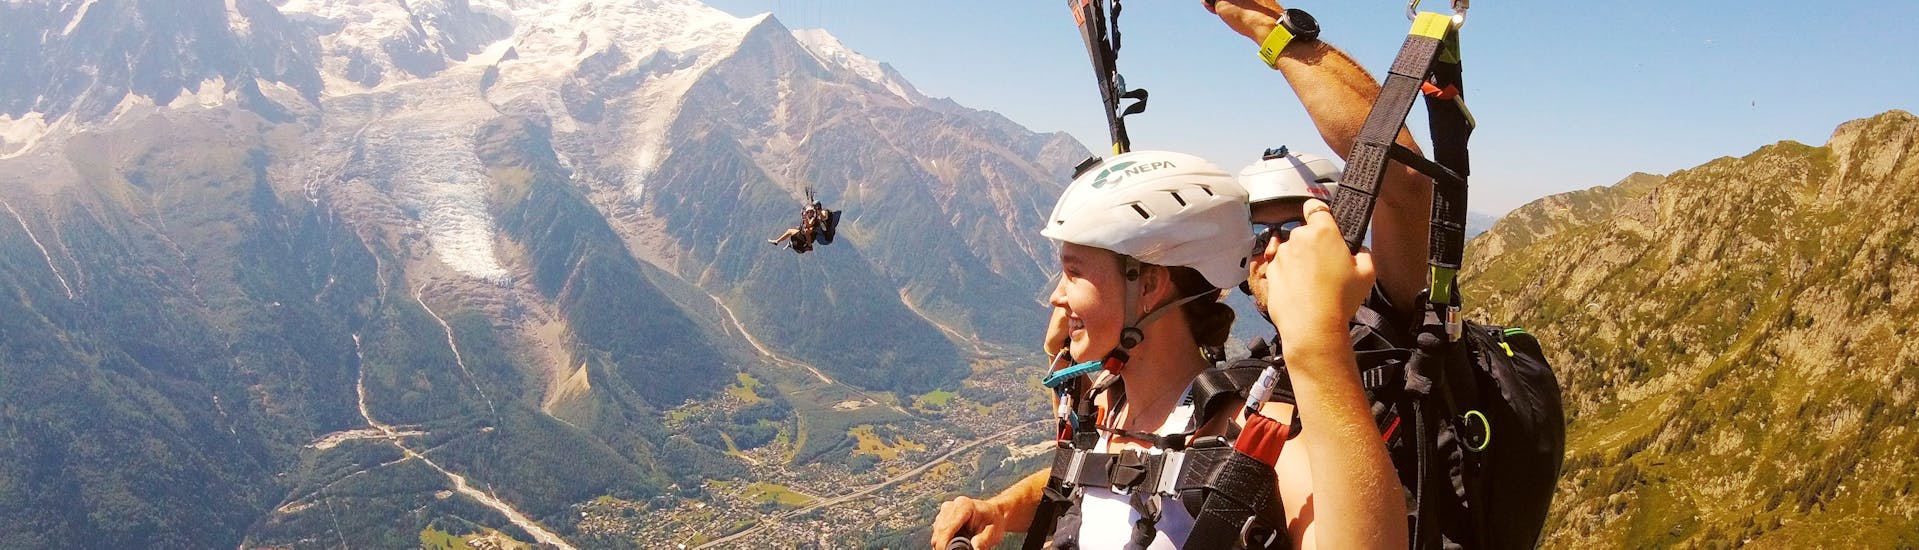 Volo panoramico in parapendio biposto a Chamonix (da 12 anni) - Mont Blanc.